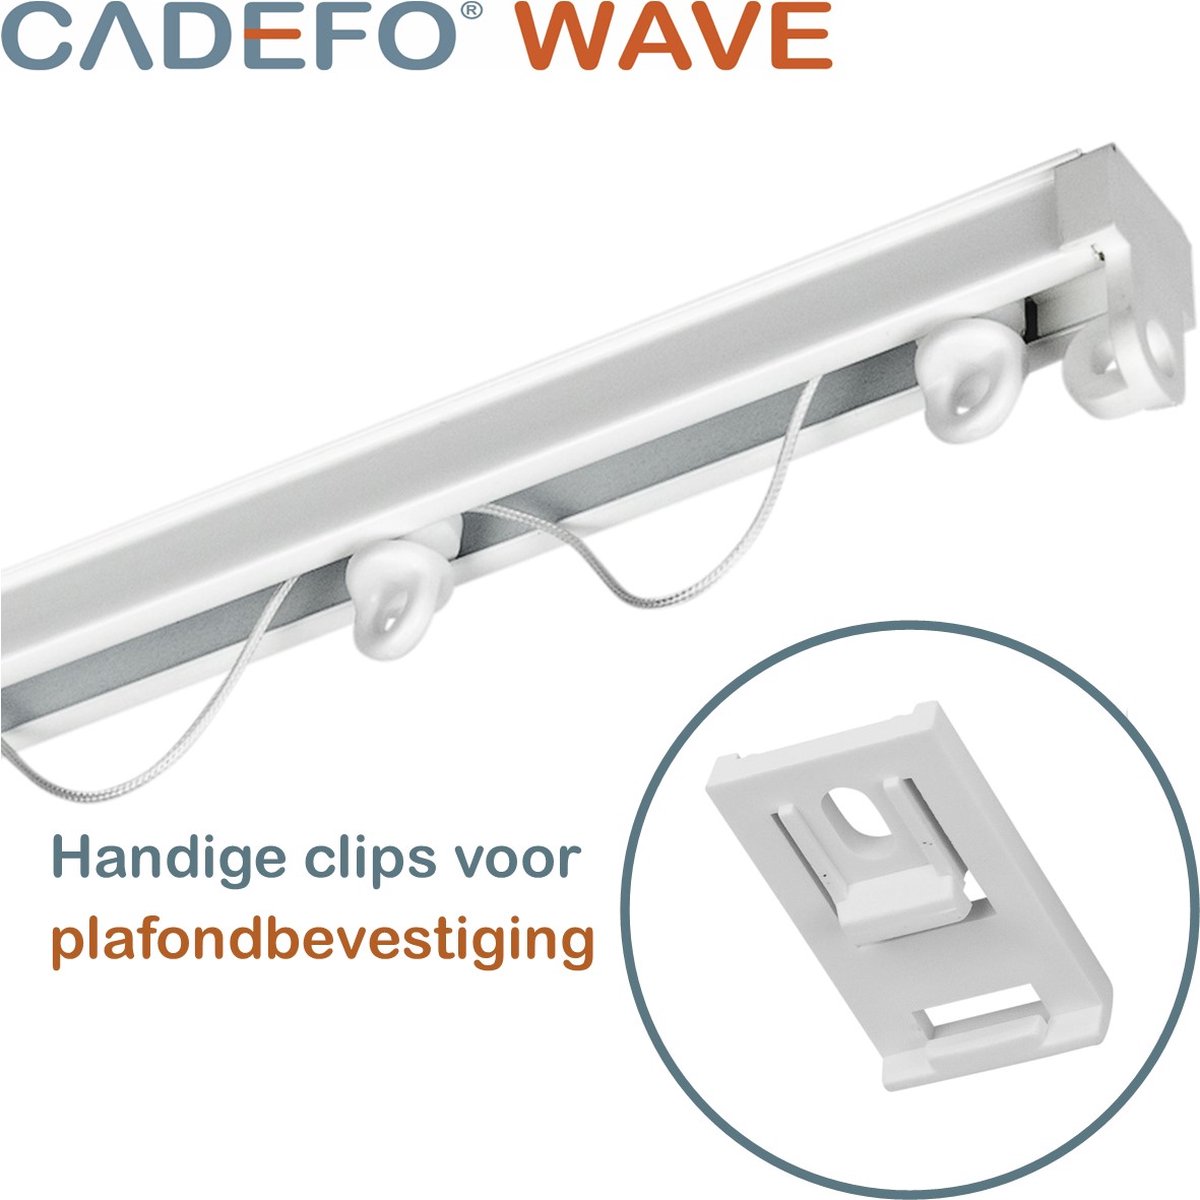 CADEFO WAVE (501 - 550 cm) Gordijnrails - Compleet op maat! - UIT 1 STUK - Leverbaar tot 6 meter - Plafondbevestiging - Lengte 504 cm